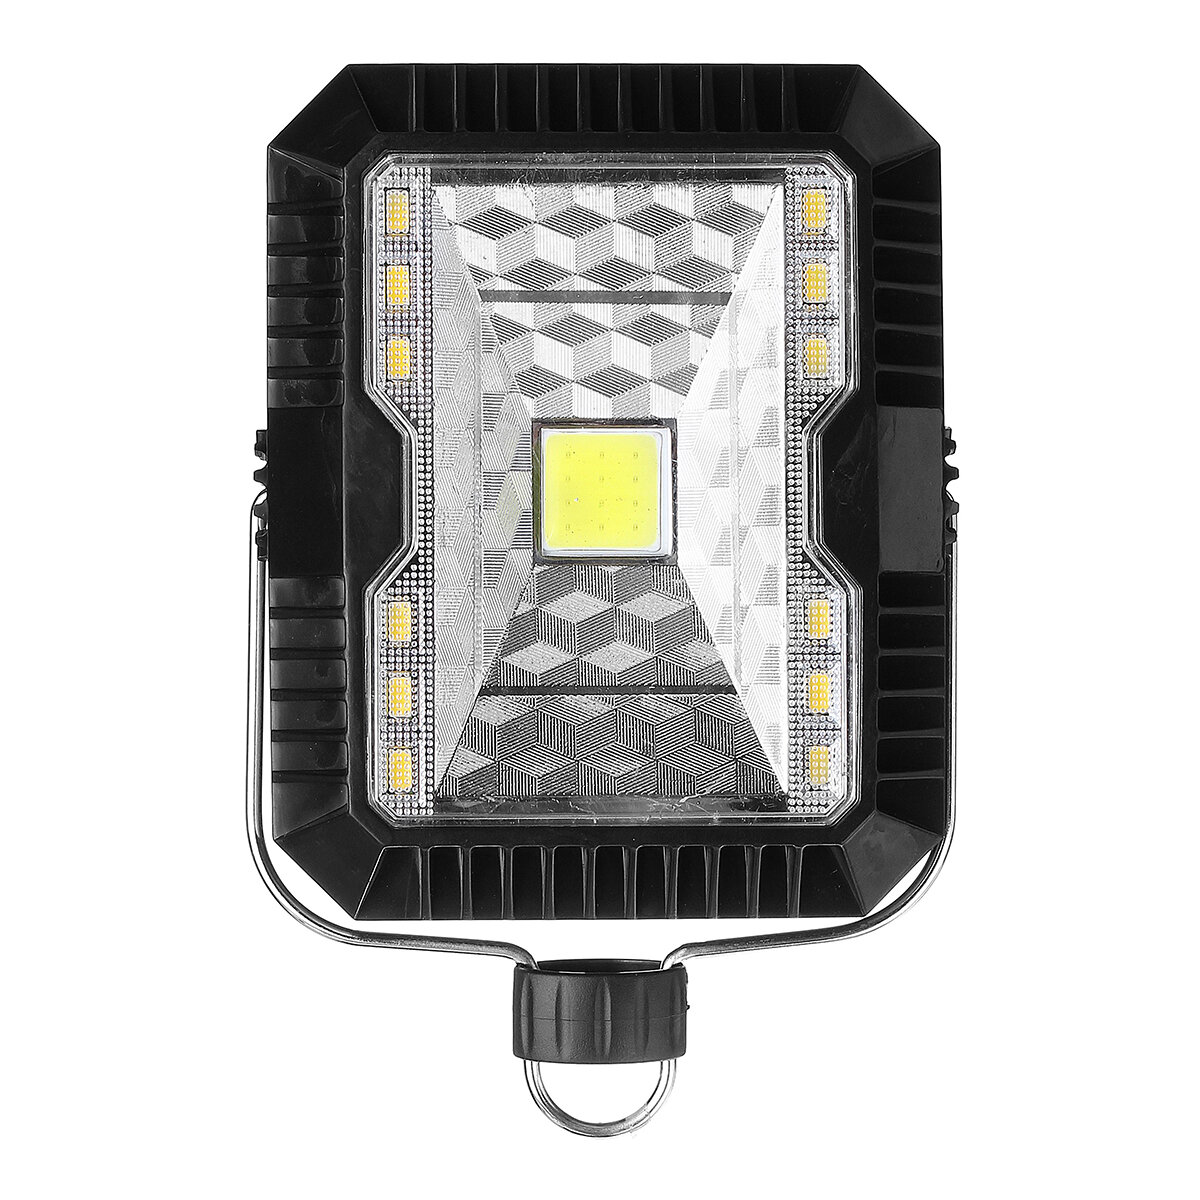 5W USB Güneş Enerjili LED Kampçılık Fener Işıklandırmalı Çalışma Işığı 3 Modu Outdoor Acil Durum Lamba IP65 Su Geçirmez